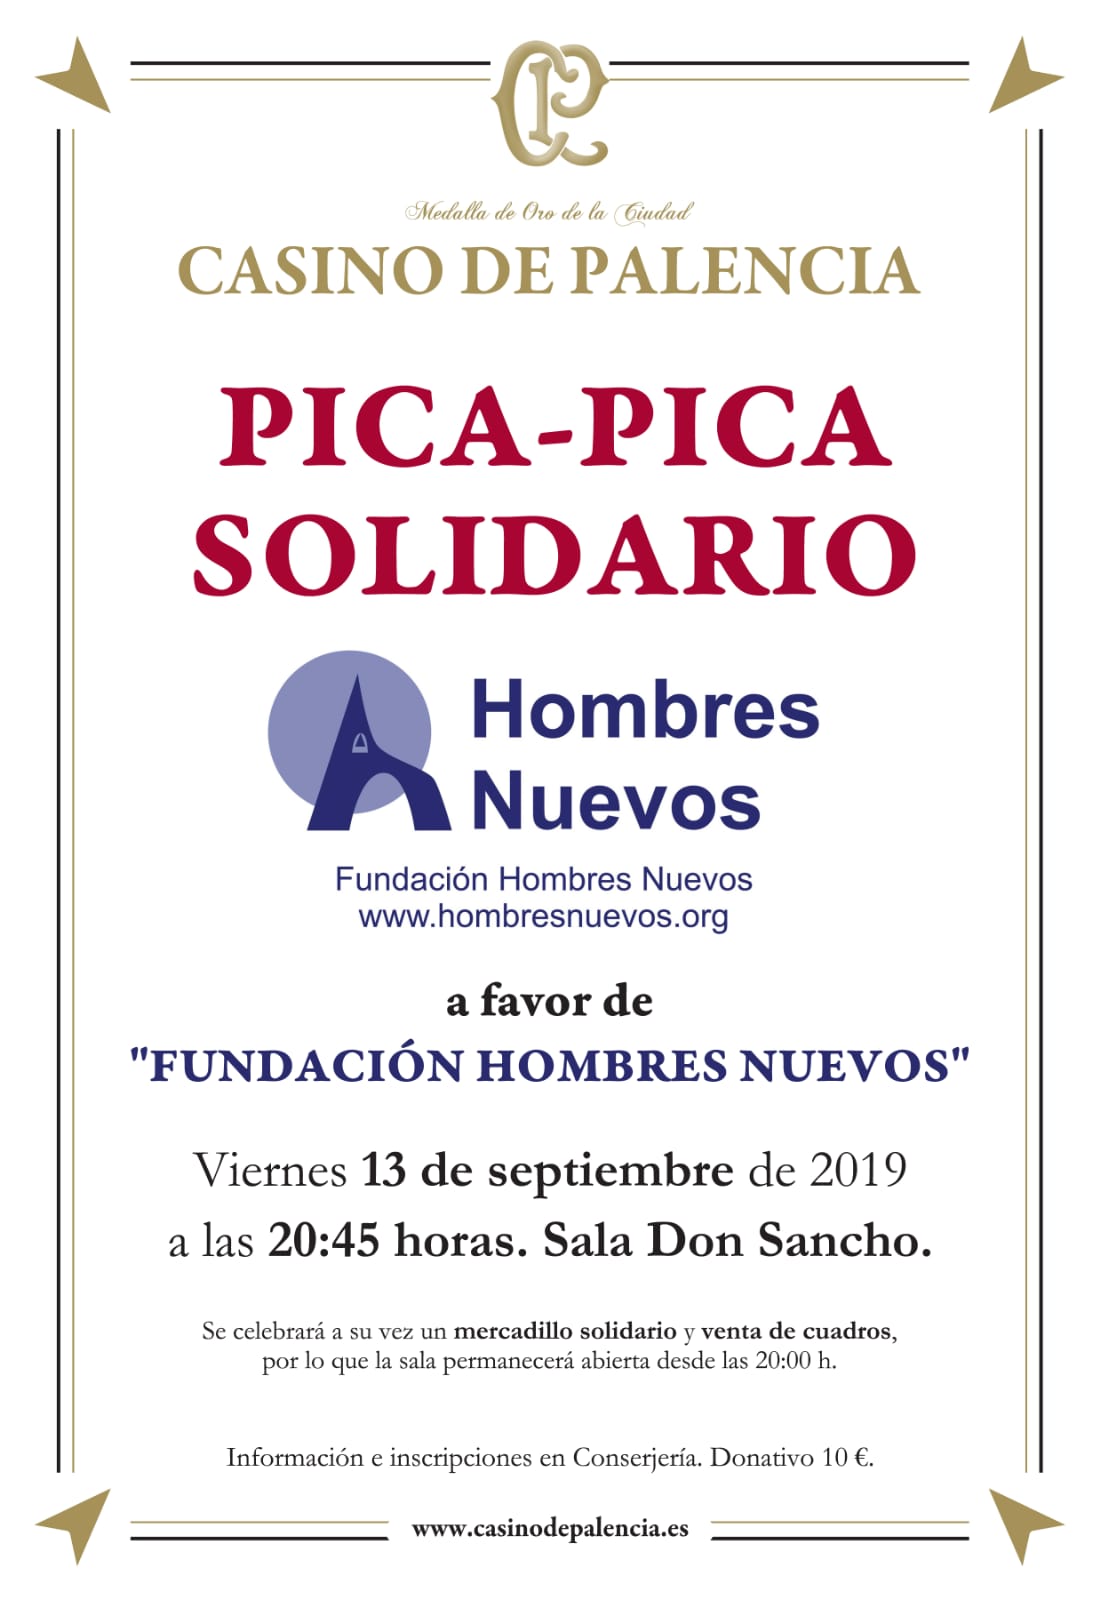 El Casino de Palencia colabora con la Fundación Hombres Nuevos